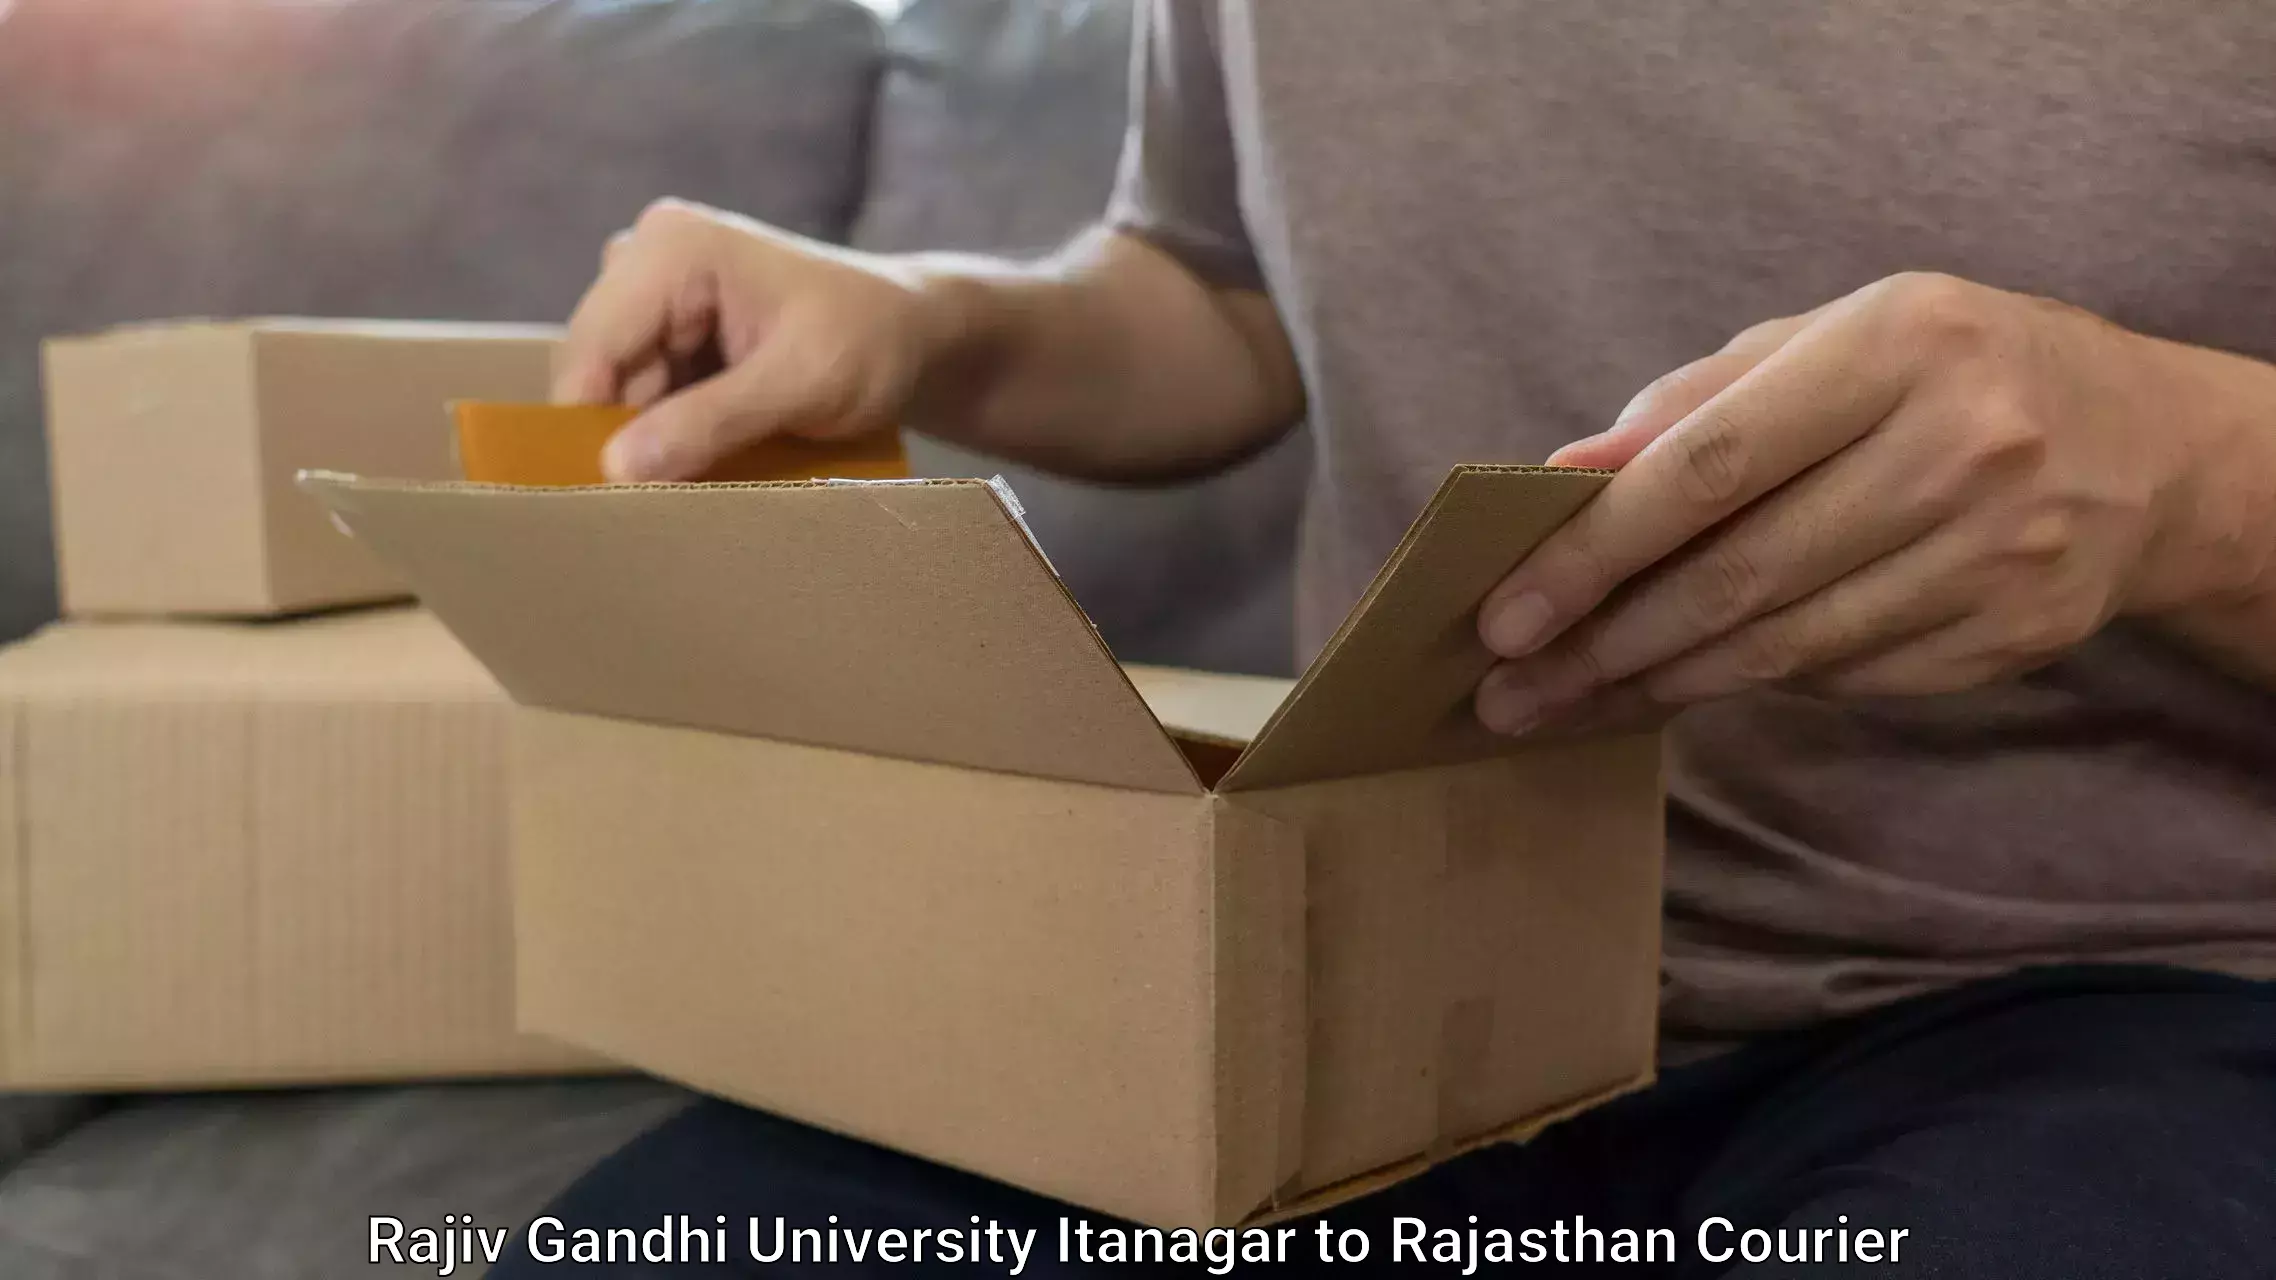 Baggage transport quote in Rajiv Gandhi University Itanagar to Rajasthan